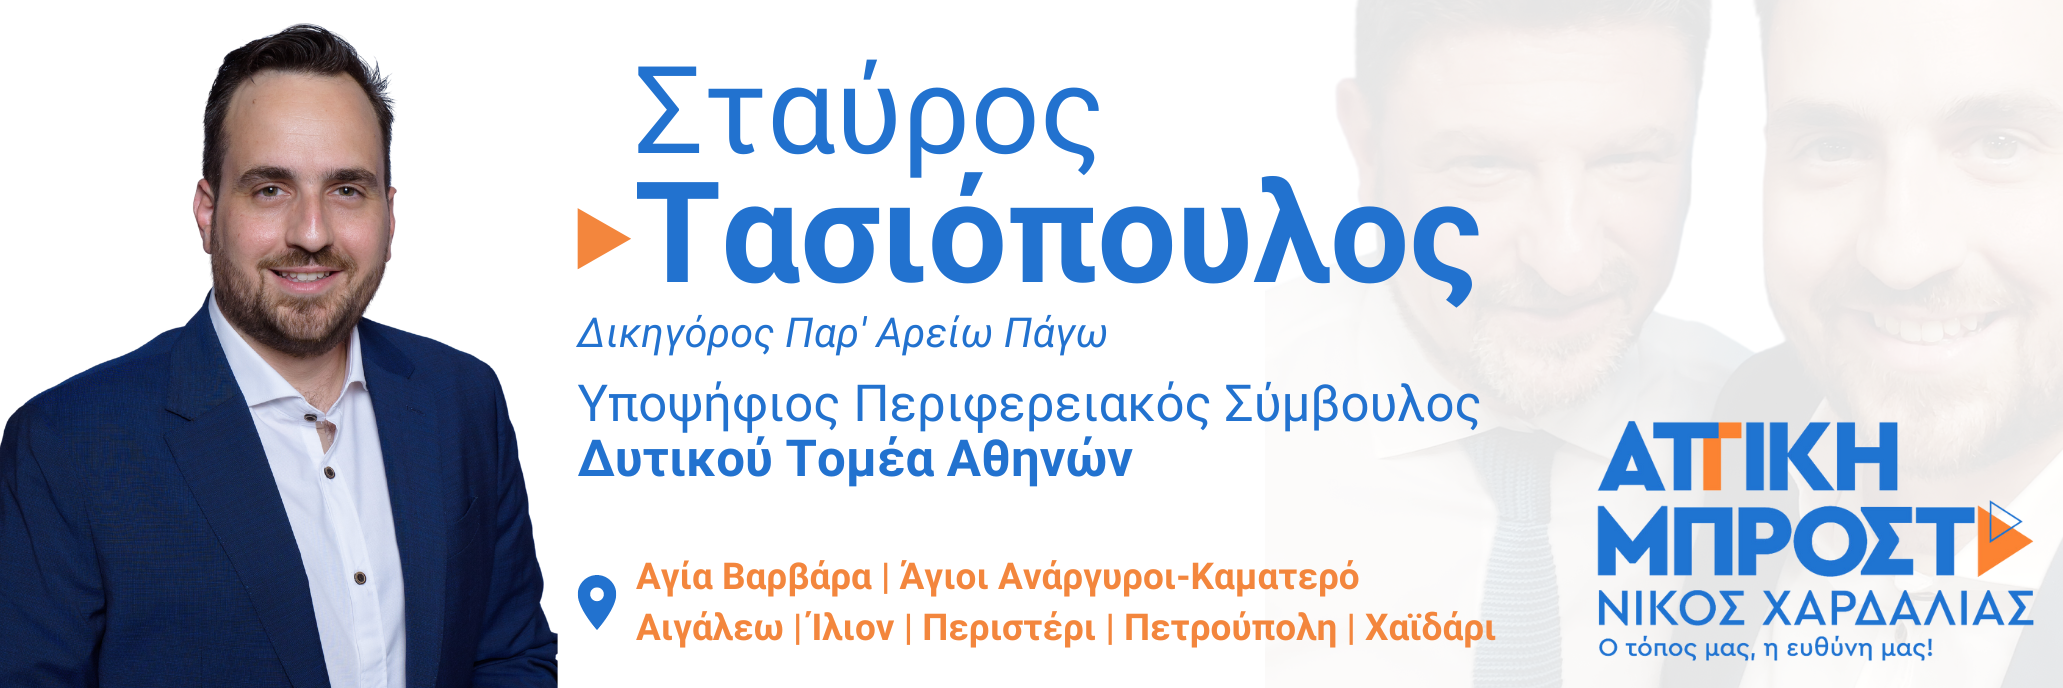 Σταύρος Τασιόπουλος -  Δικηγόρος Παρ Αρείω – Νομικός Σύμβουλος